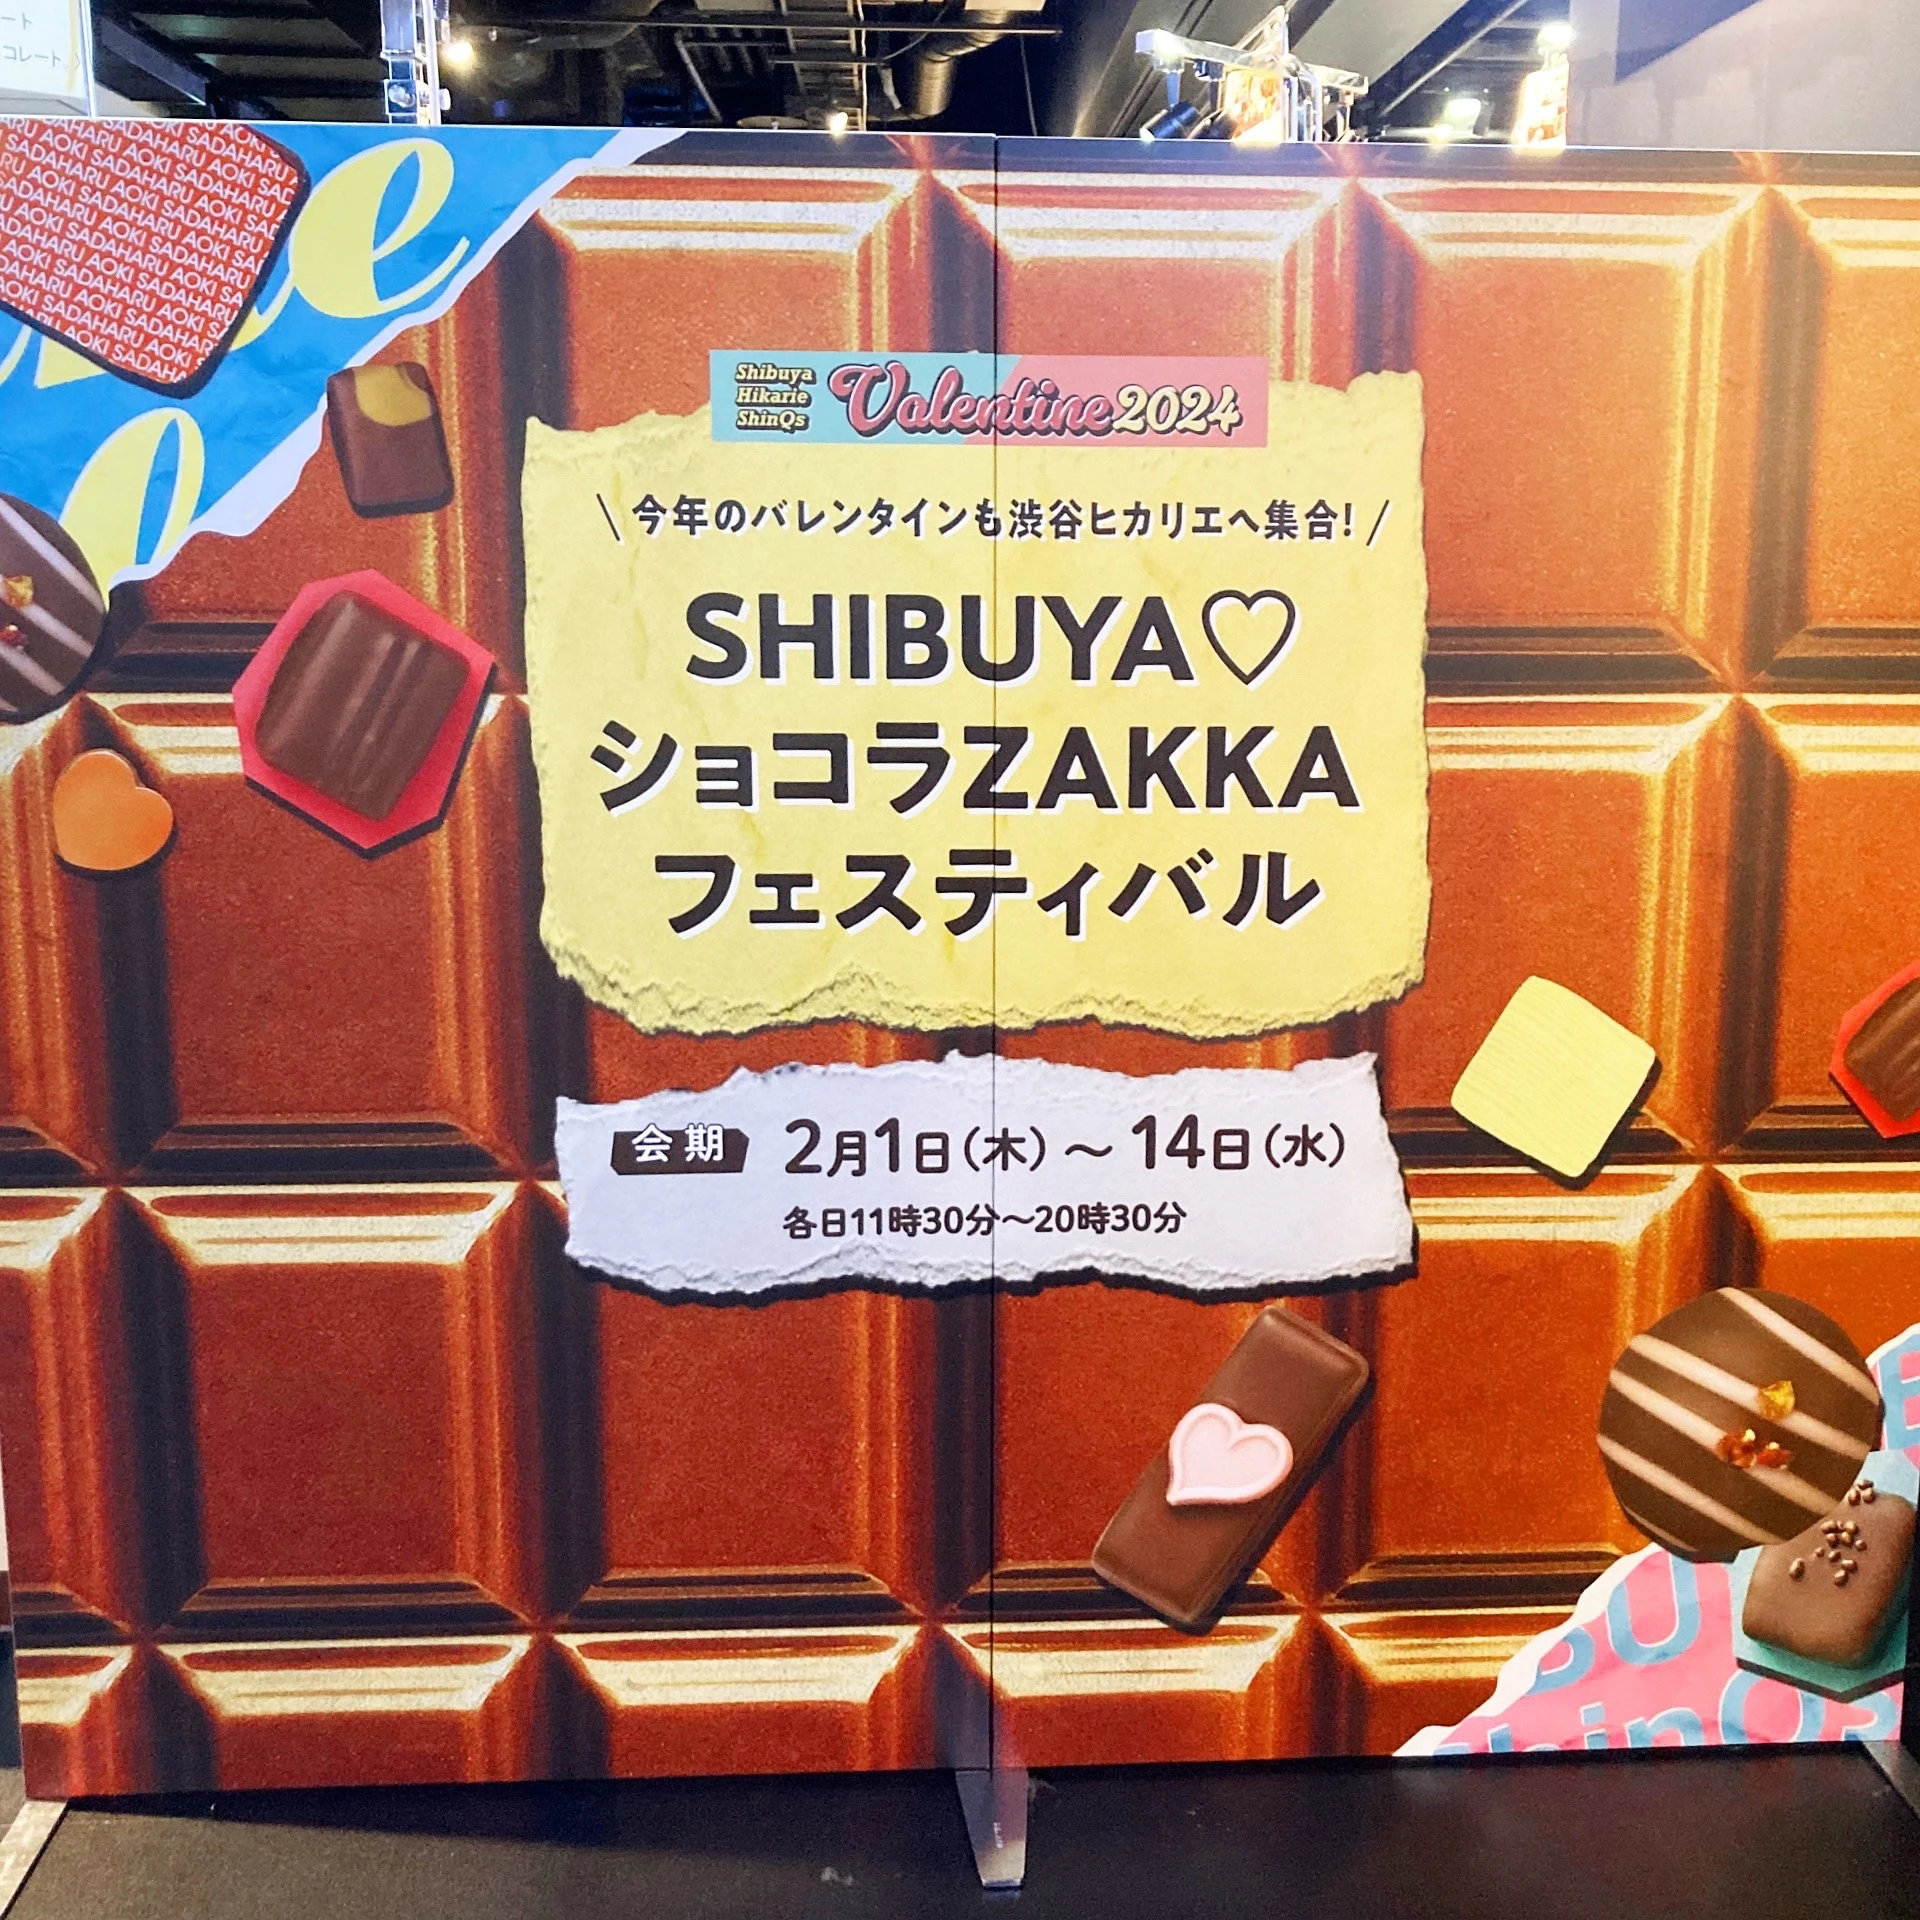 渋谷ヒカリエShinQs『SHIBUYA♡ショコラZAKKAフェスティバル』告知パネル。